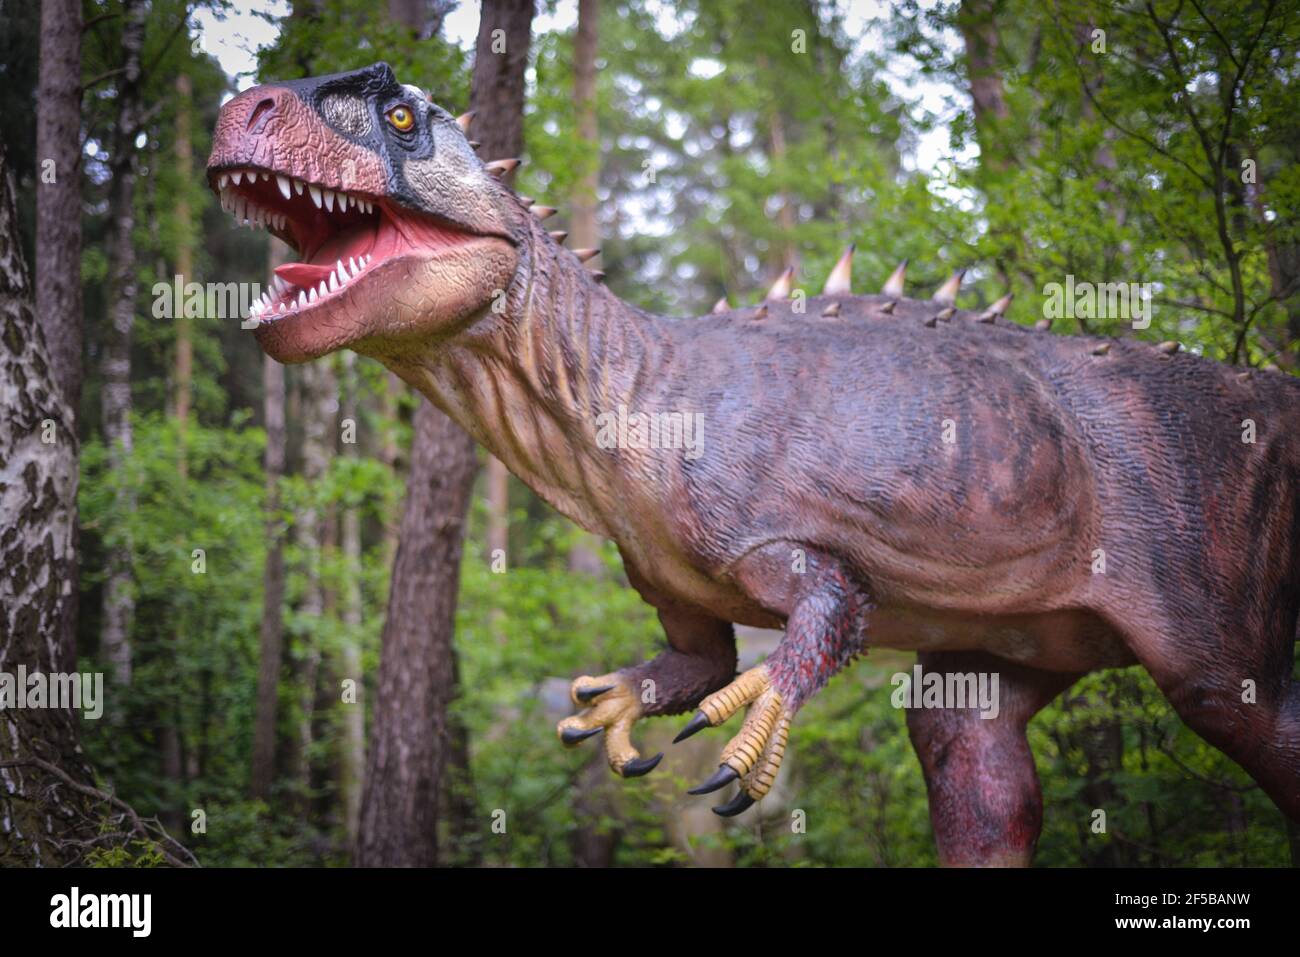 Cacciatore gigante nei boschi: Modello LifeSize di un dinosauro neovenatore. Foto Stock